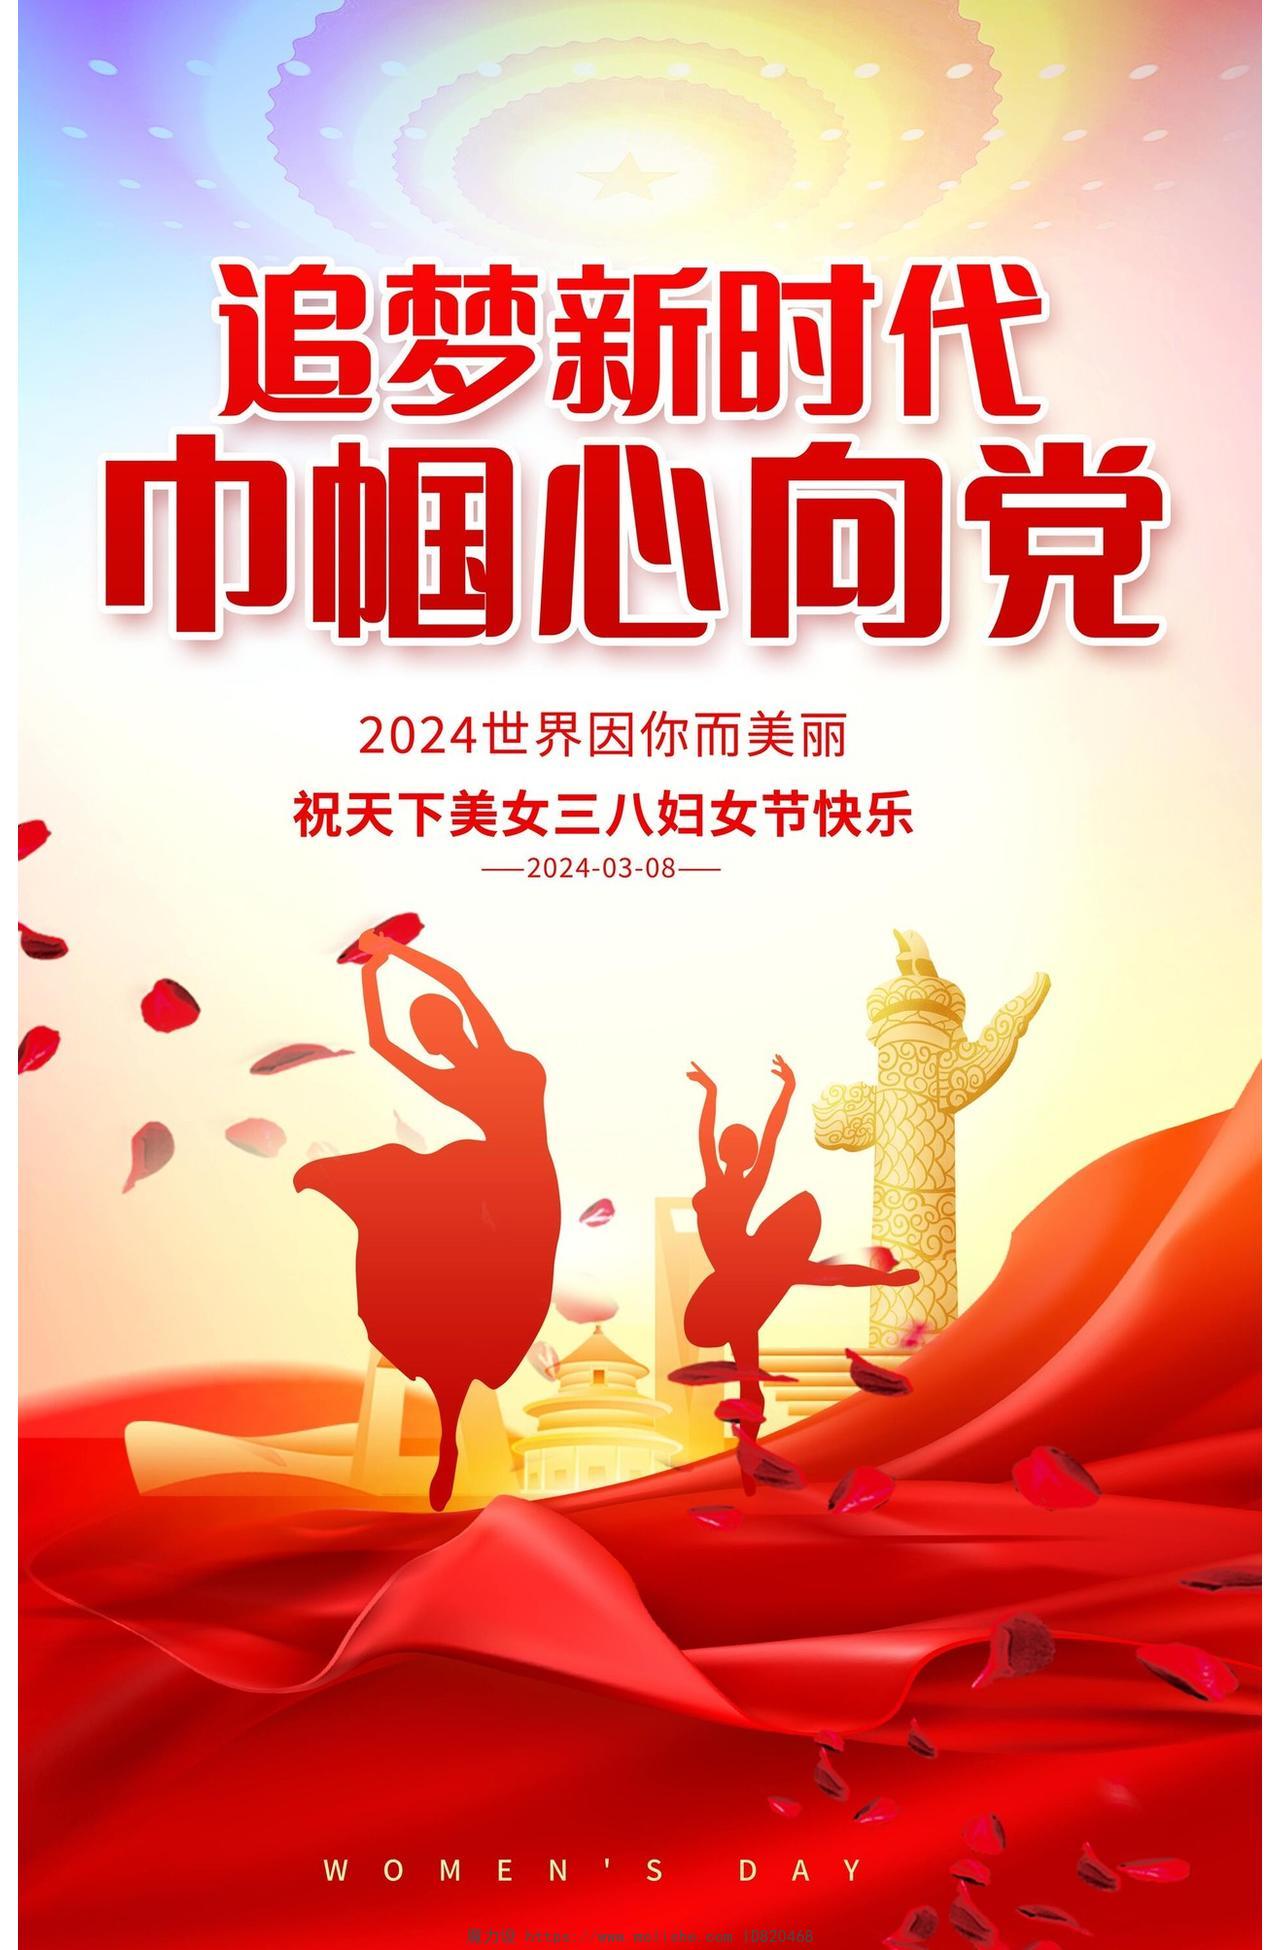 红色时尚38妇女节宣传海报设计三八38妇女节